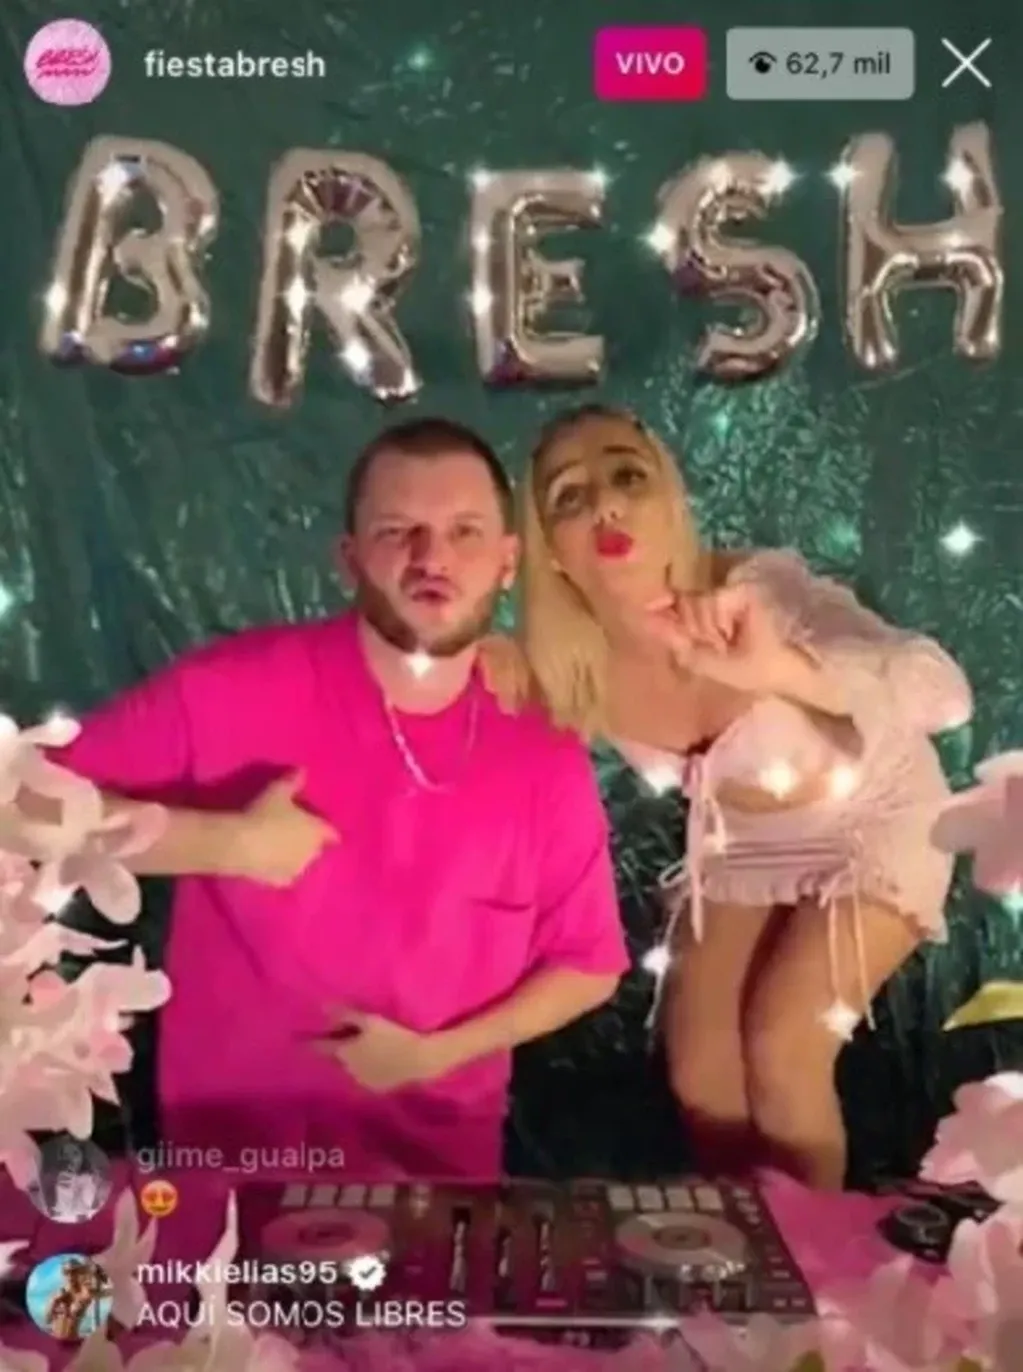 Por medio de un vivo de Instagram, en cuarentena, la fiesta Bresh convocó a miles de jovenes.